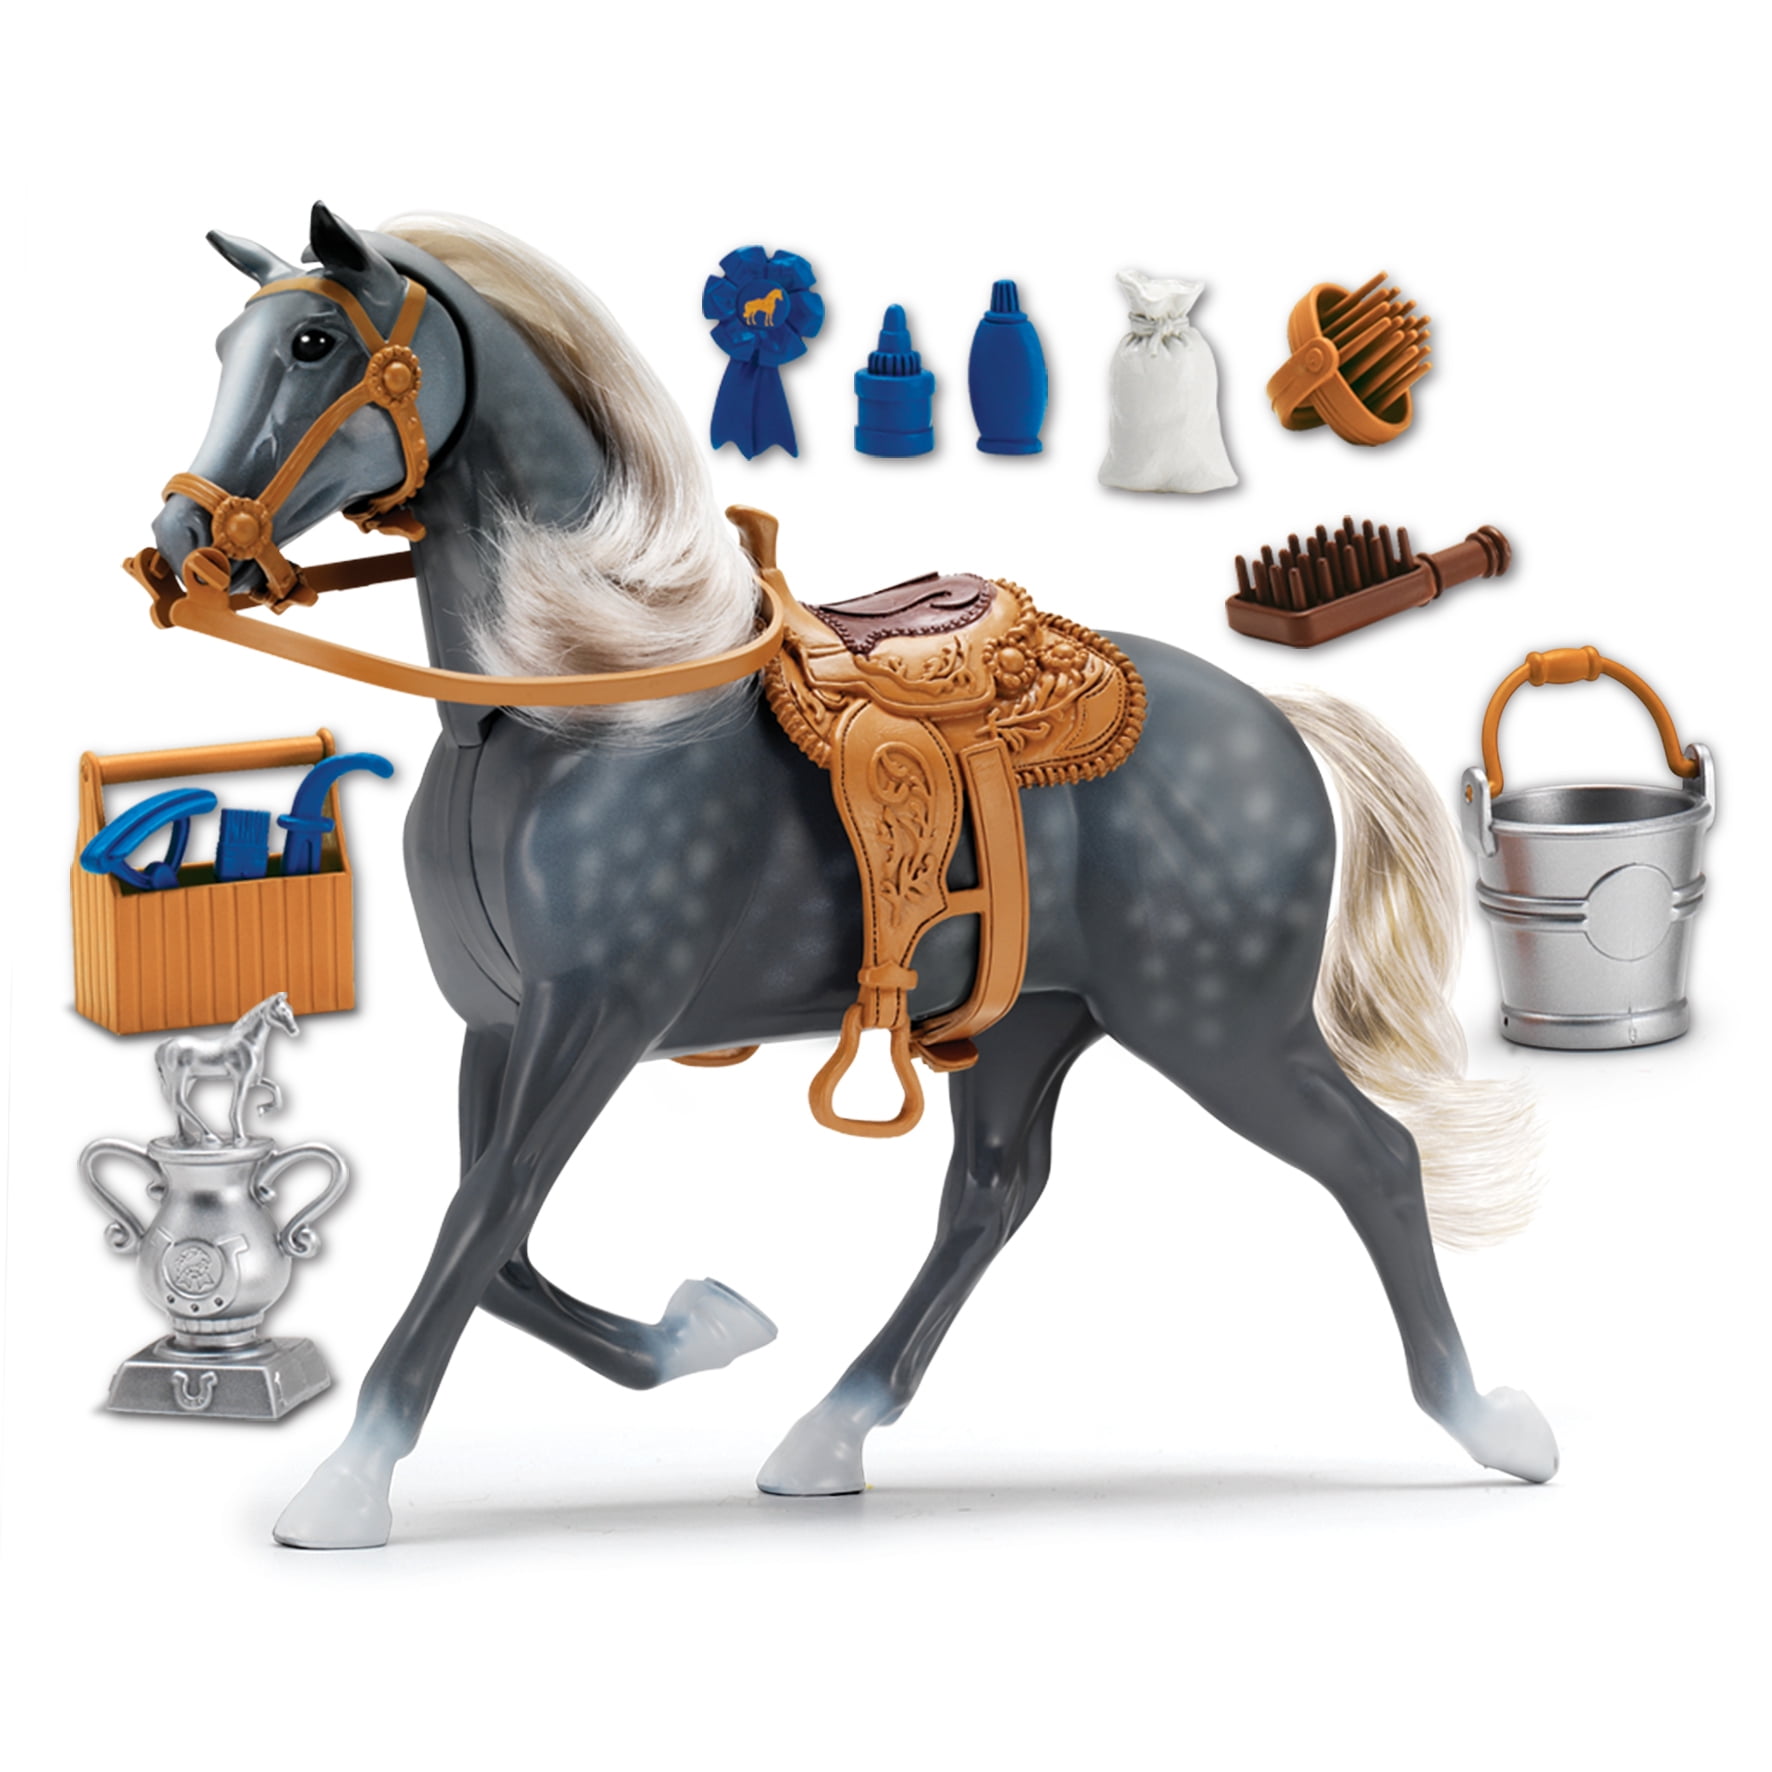 Наборы лошадки. Blue ribbon Champions лошадка. Blue ribbon Champions Deluxe Horse Set. Blue ribbon Champions Deluxe Horse Set - Quarter Horse. Оригинал Blue ribbon Champion Deluxe Horse Set.